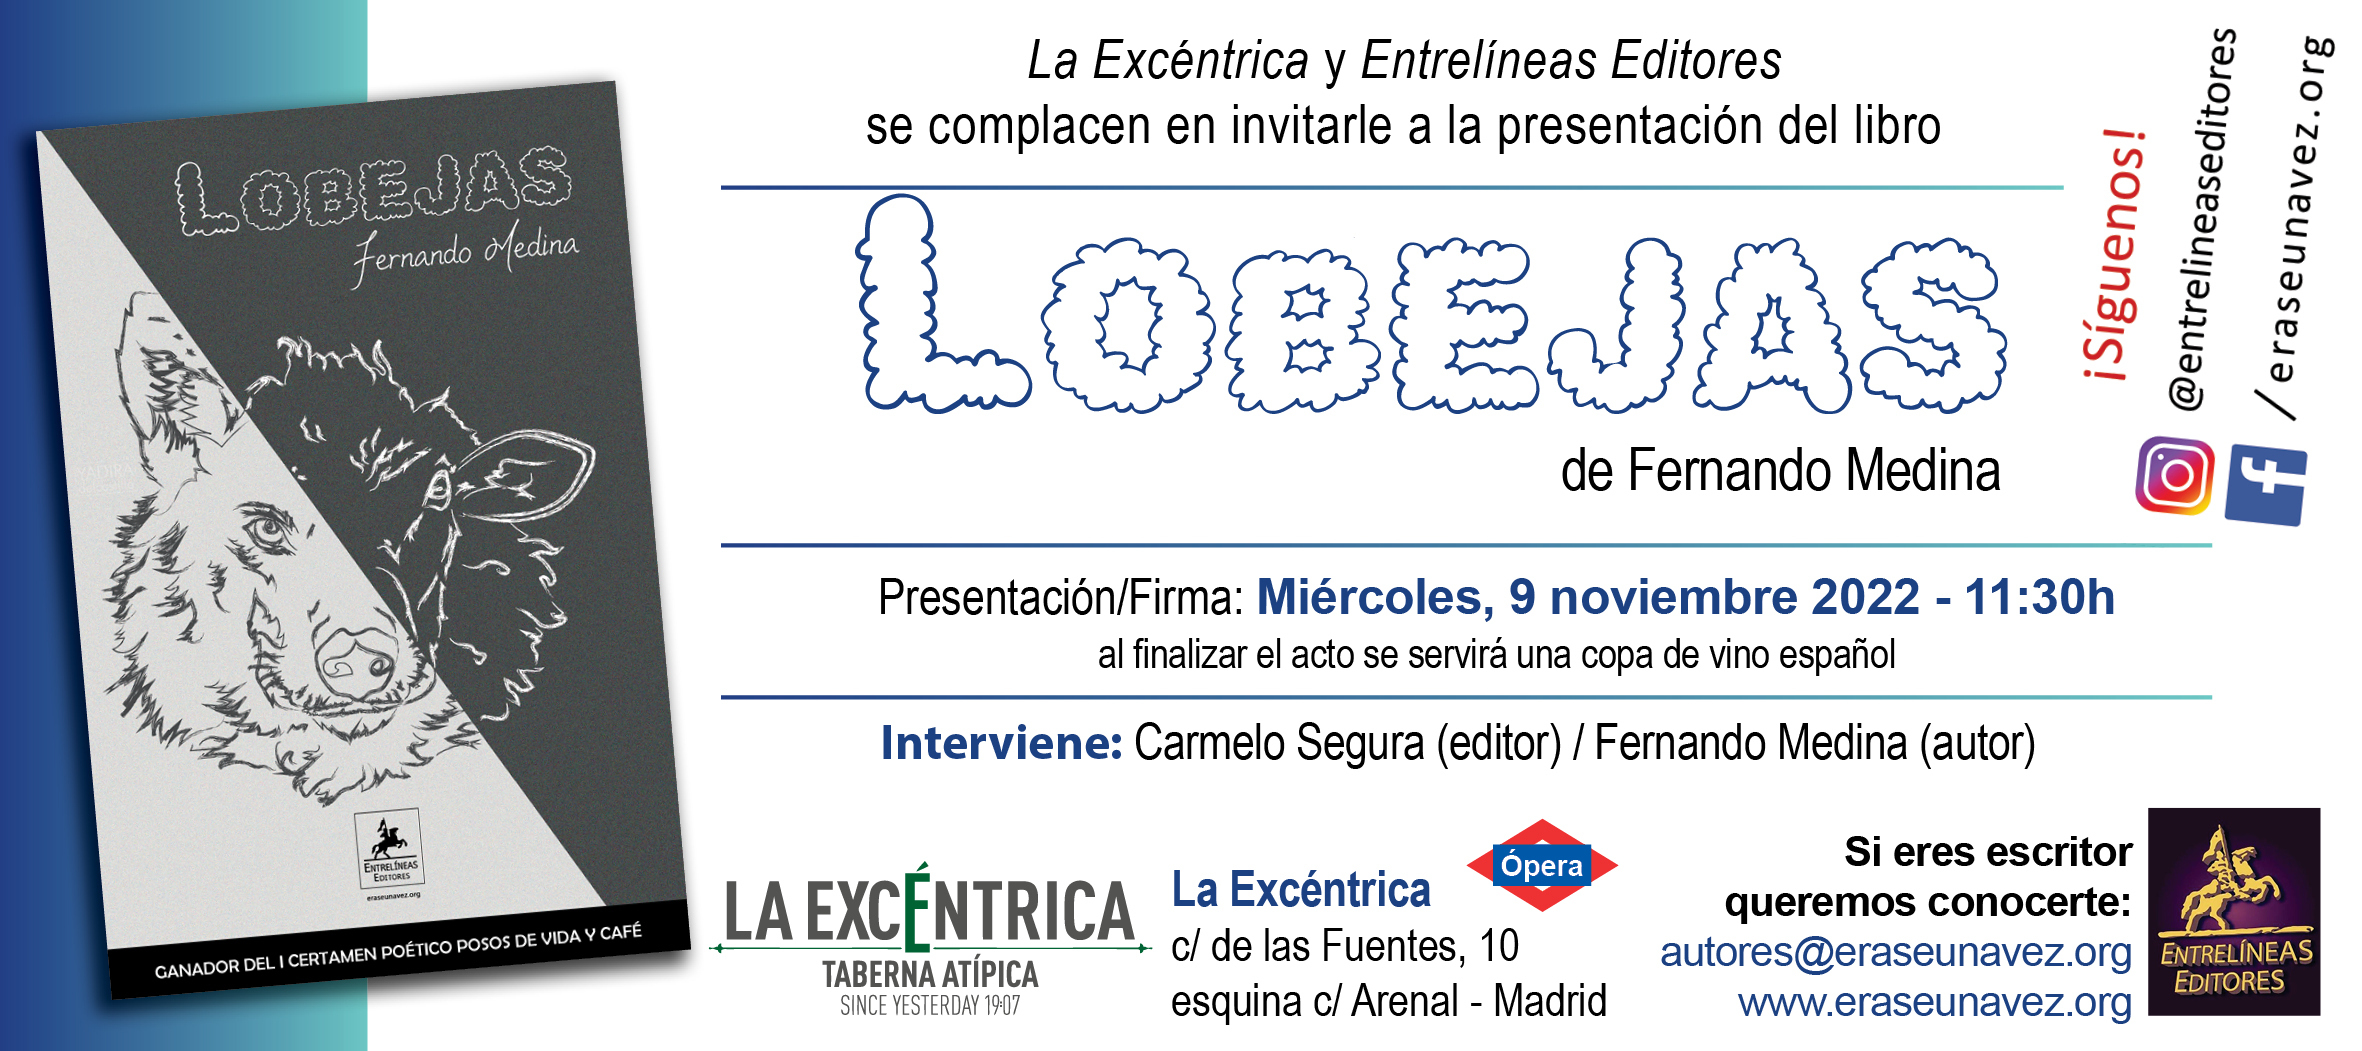 2022-11-09_-Lobejas_-_invitacion